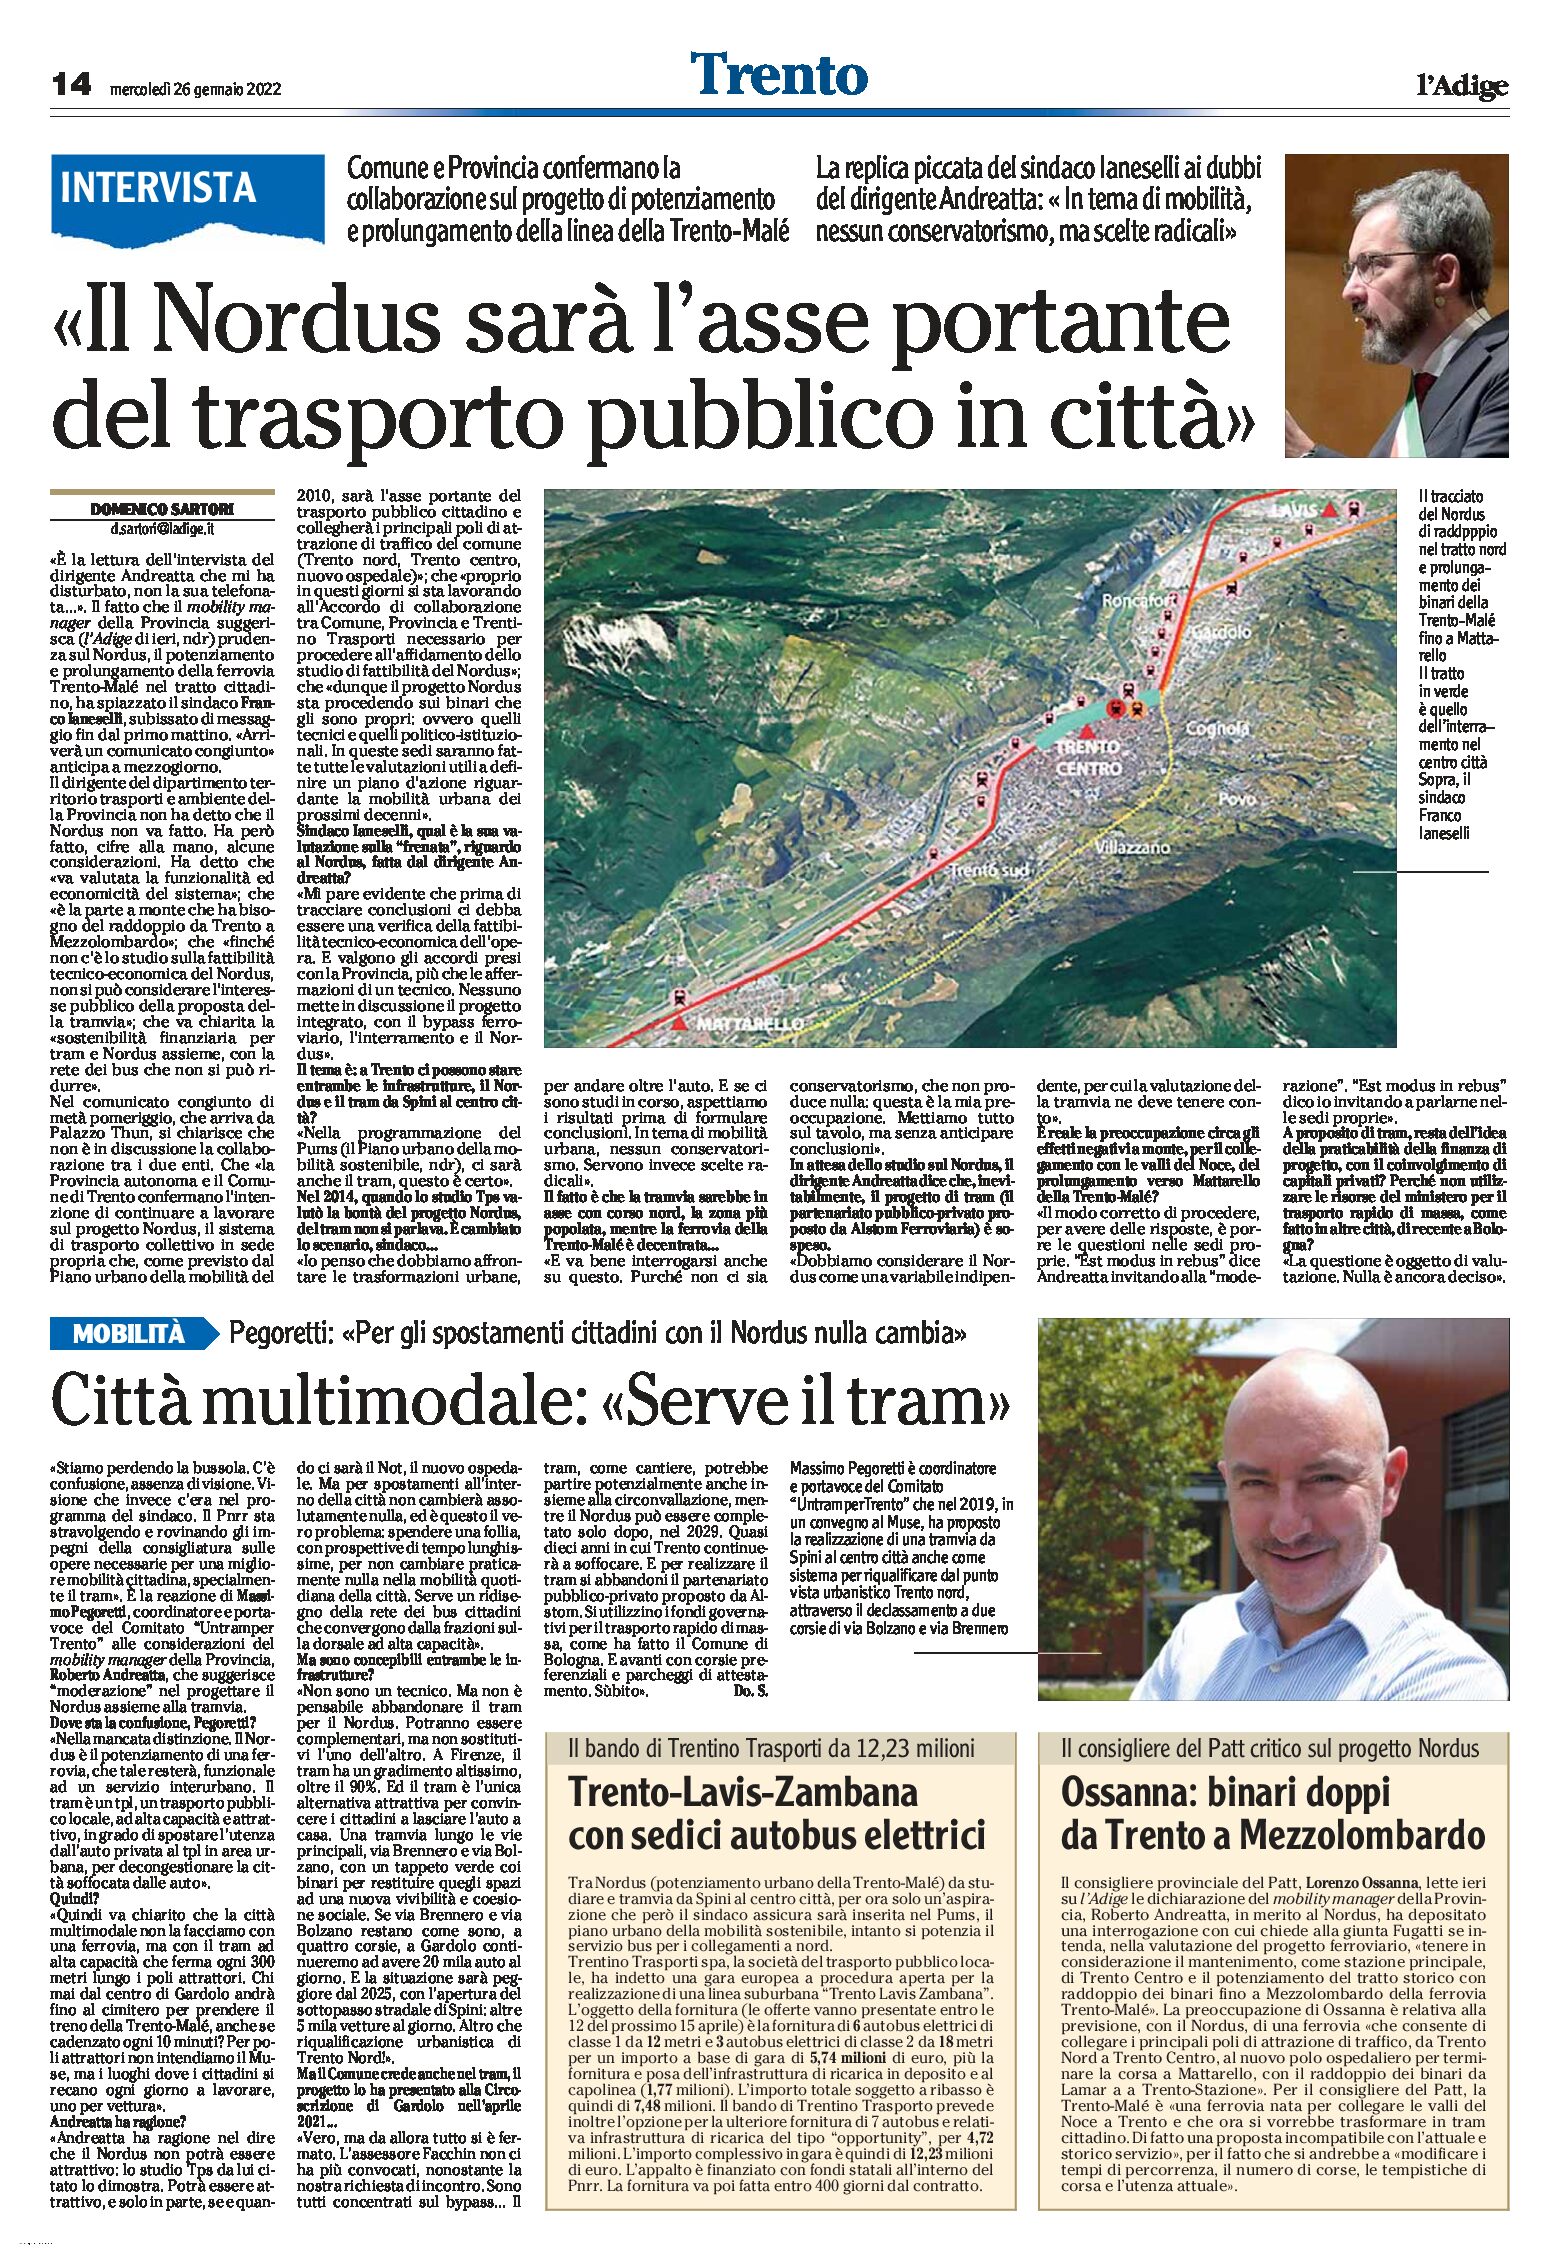 Trento, Nordus: sarà l’asse portante del trasporto pubblico in città. Intervista a Ianeselli